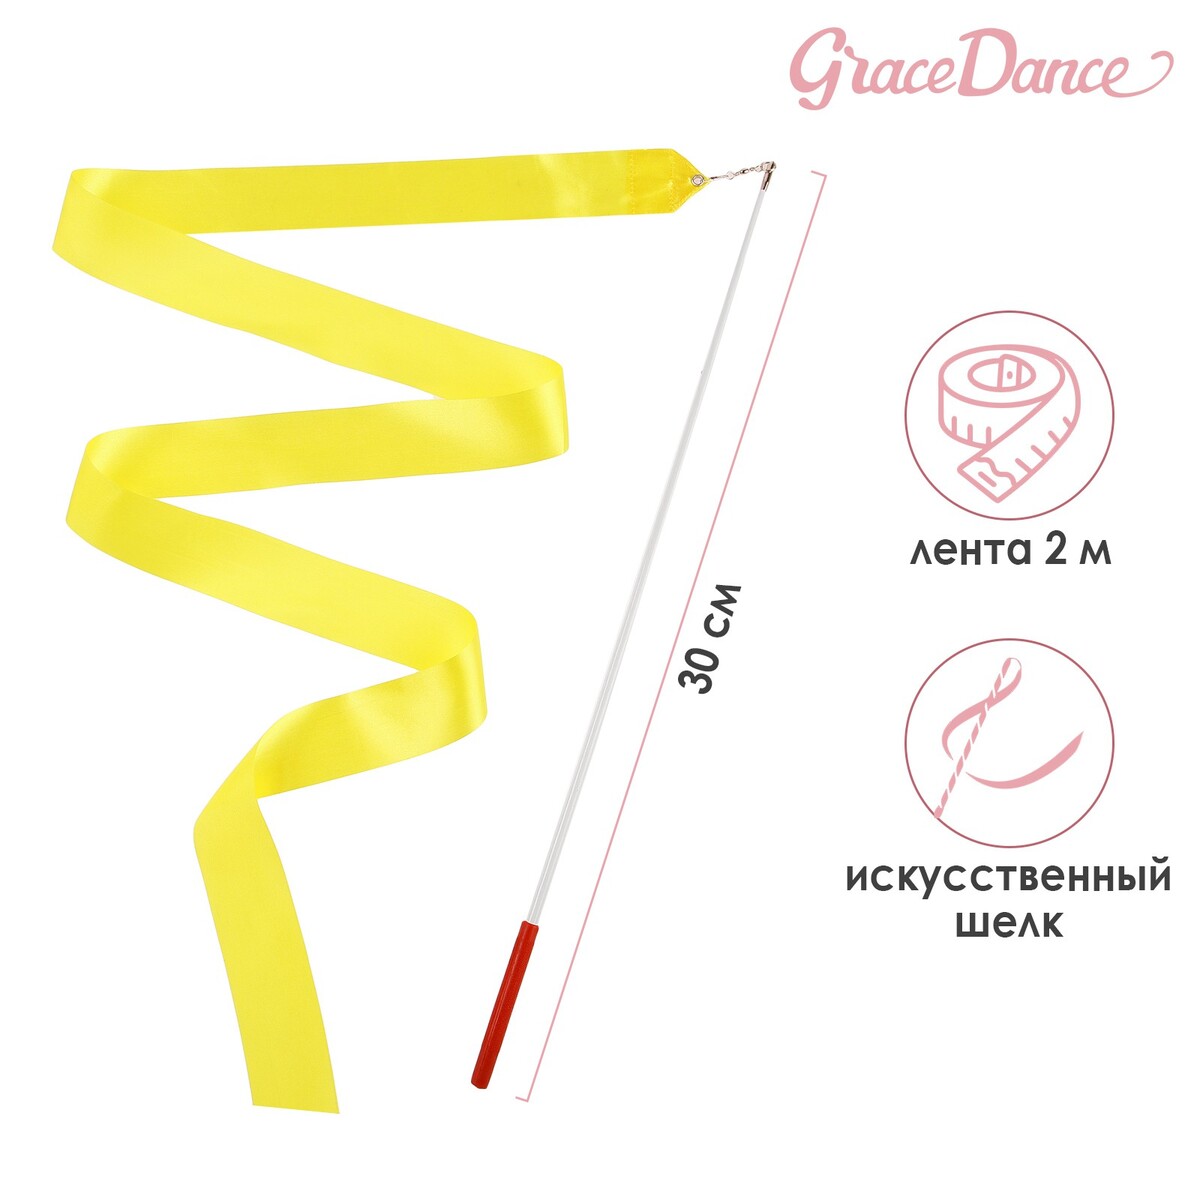 Лента для художественной гимнастики с палочкой grace dance, 2 м, цвет желтый лента для художественной гимнастики с палочкой grace dance 2 м желтый